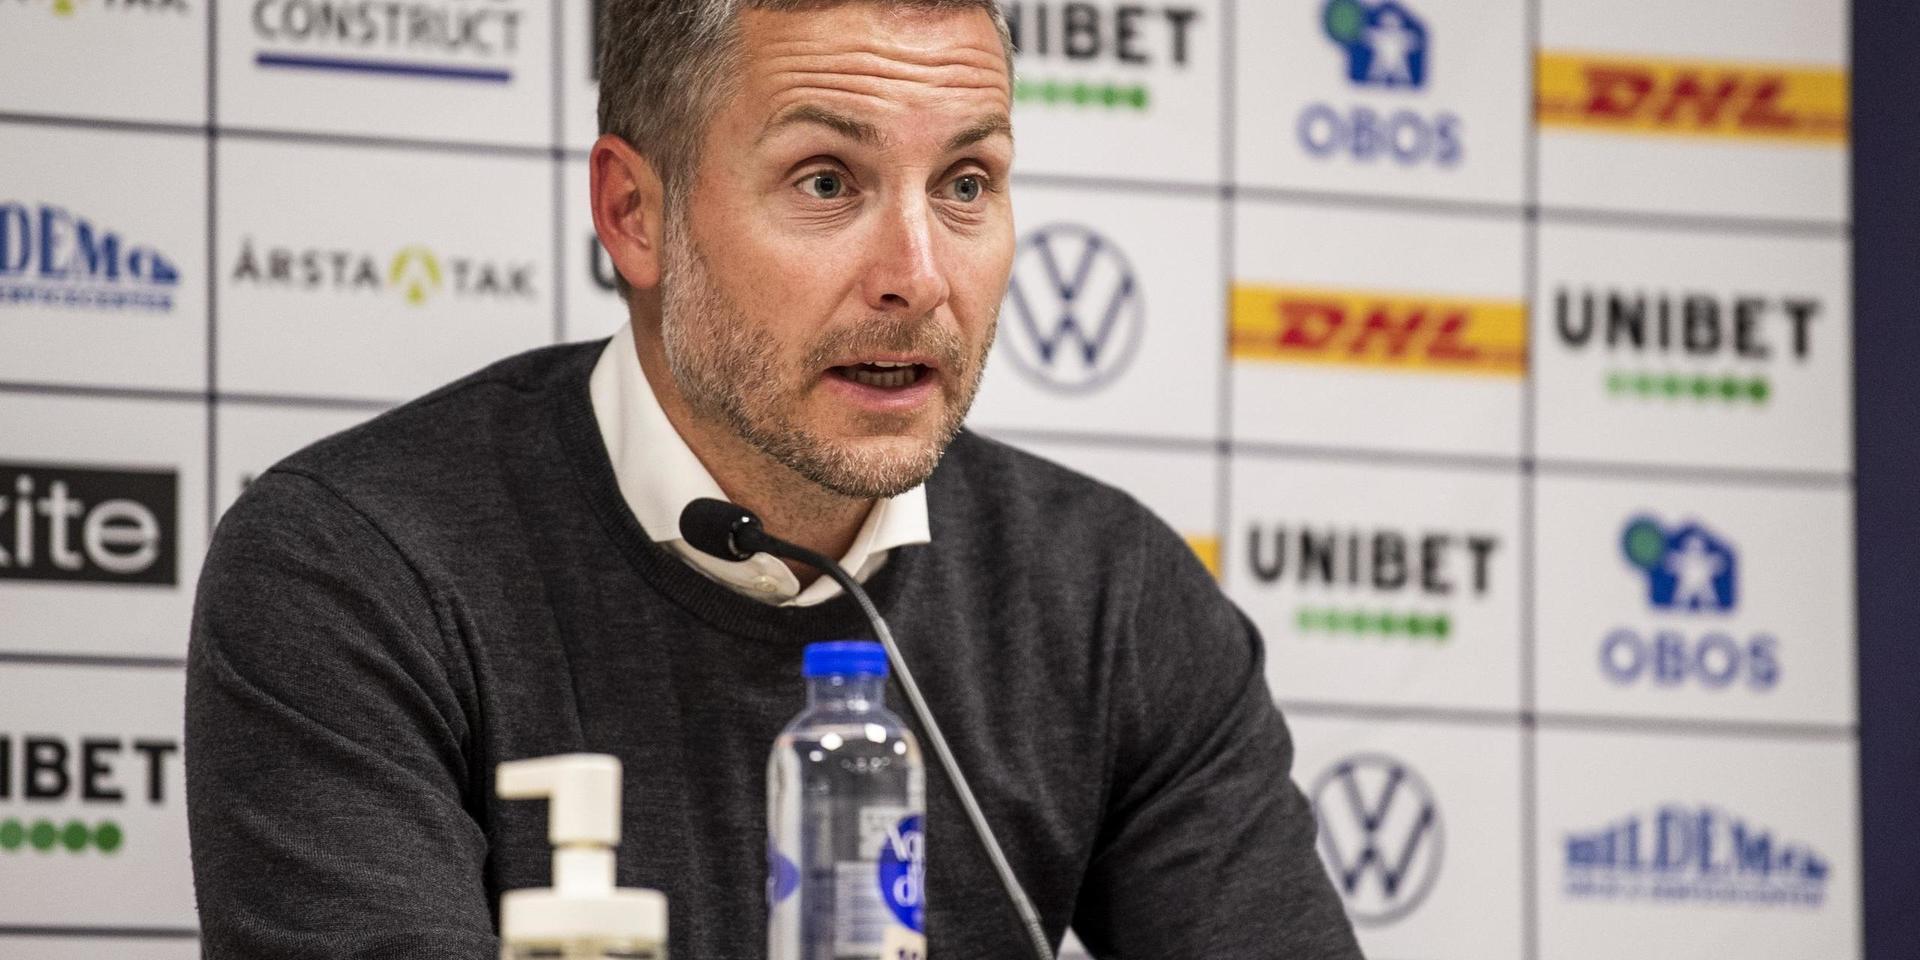 Örebros tränare Axel Kjäll under presskonferensen efter fotbollsmatchen i Allsvenskan mellan Sirius och Örebro den 5 juli 2020 i Uppsala.